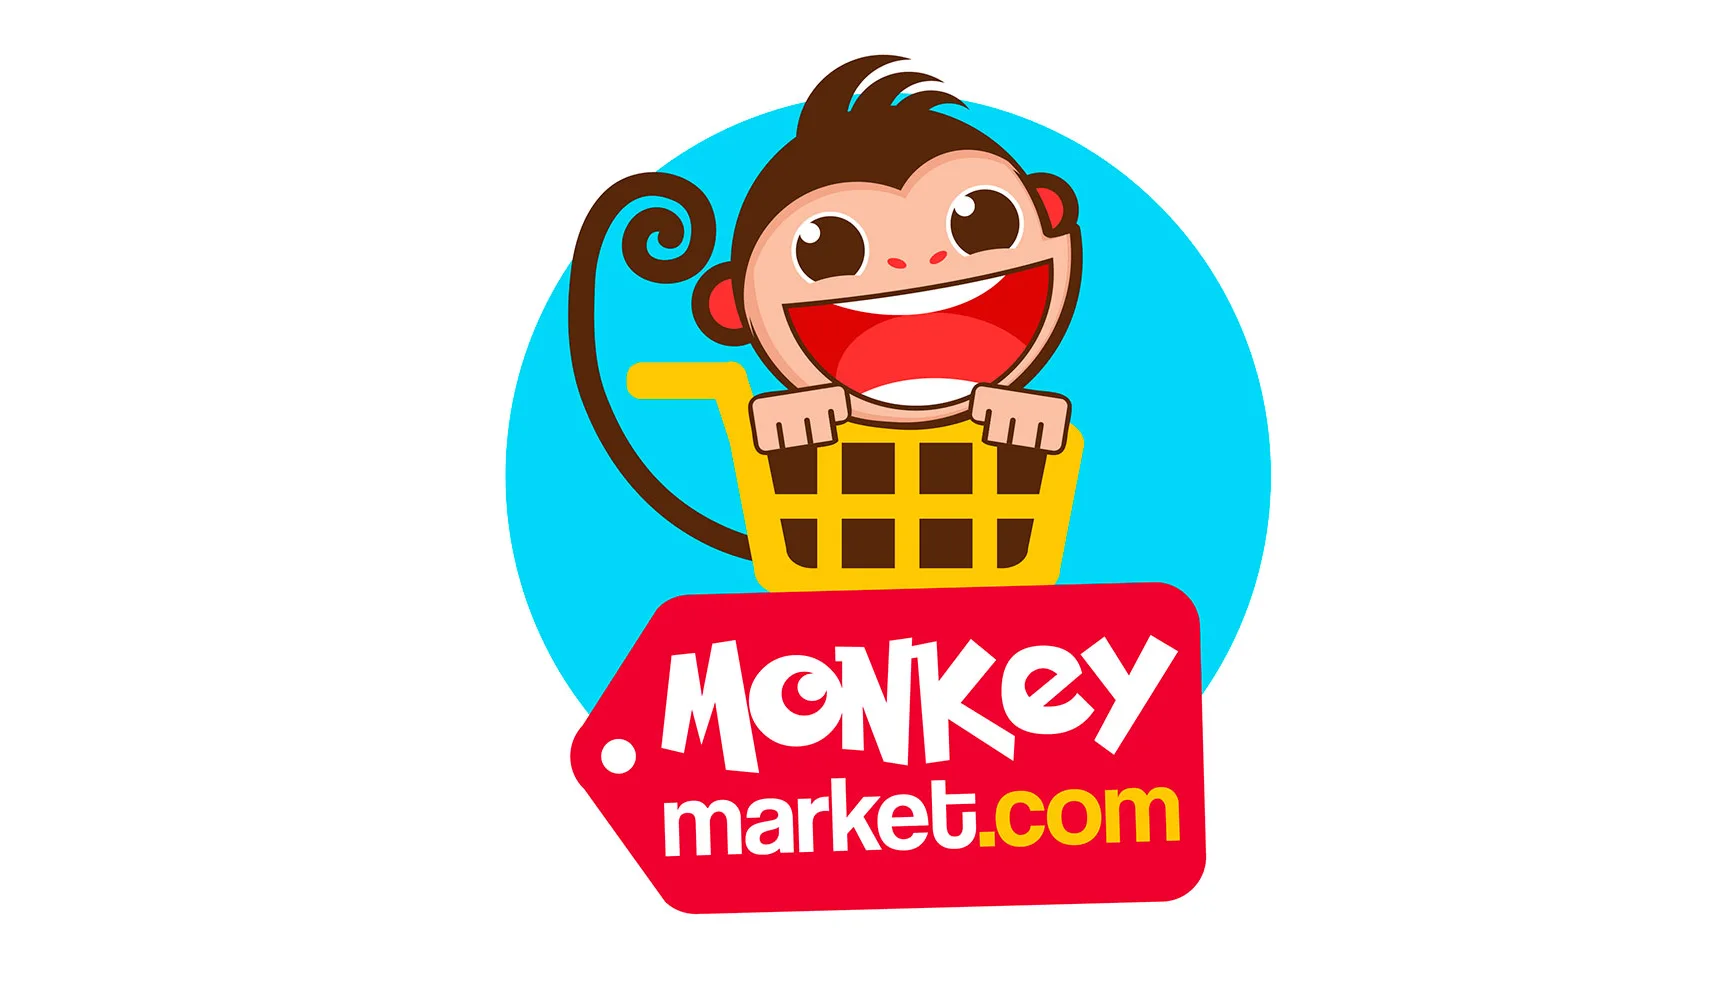 monkey market